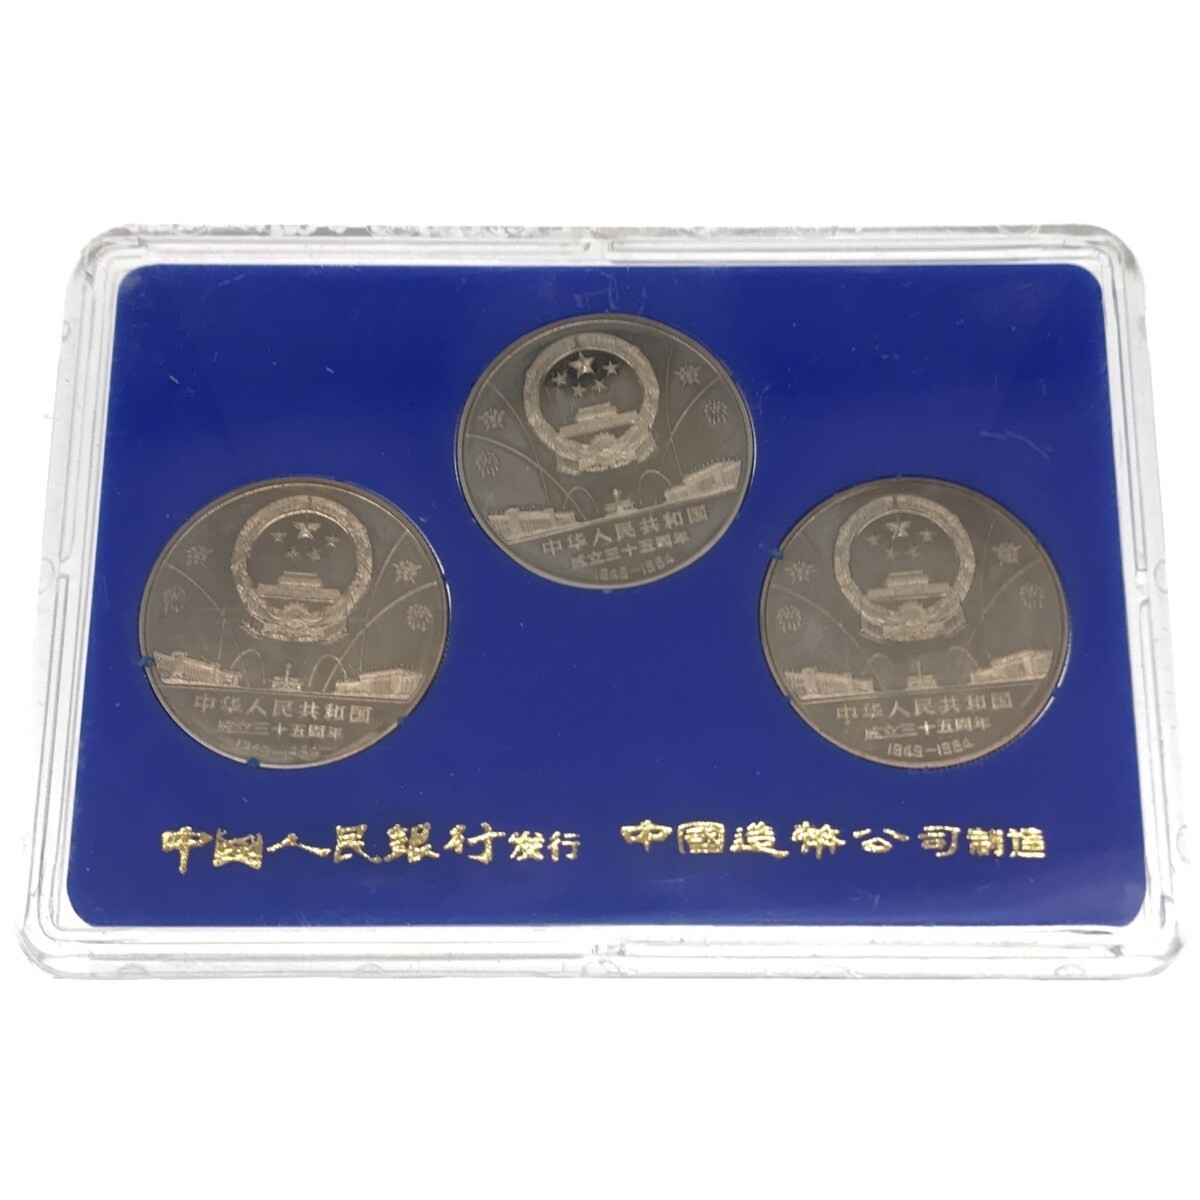 【希少品】中華人民共和国成立35周年 一円白銅貨 記念貨幣セット 1949-1984 3種セット 中国コイン 中国人民銀行 中国造幣谷司 限定品 M661_画像2